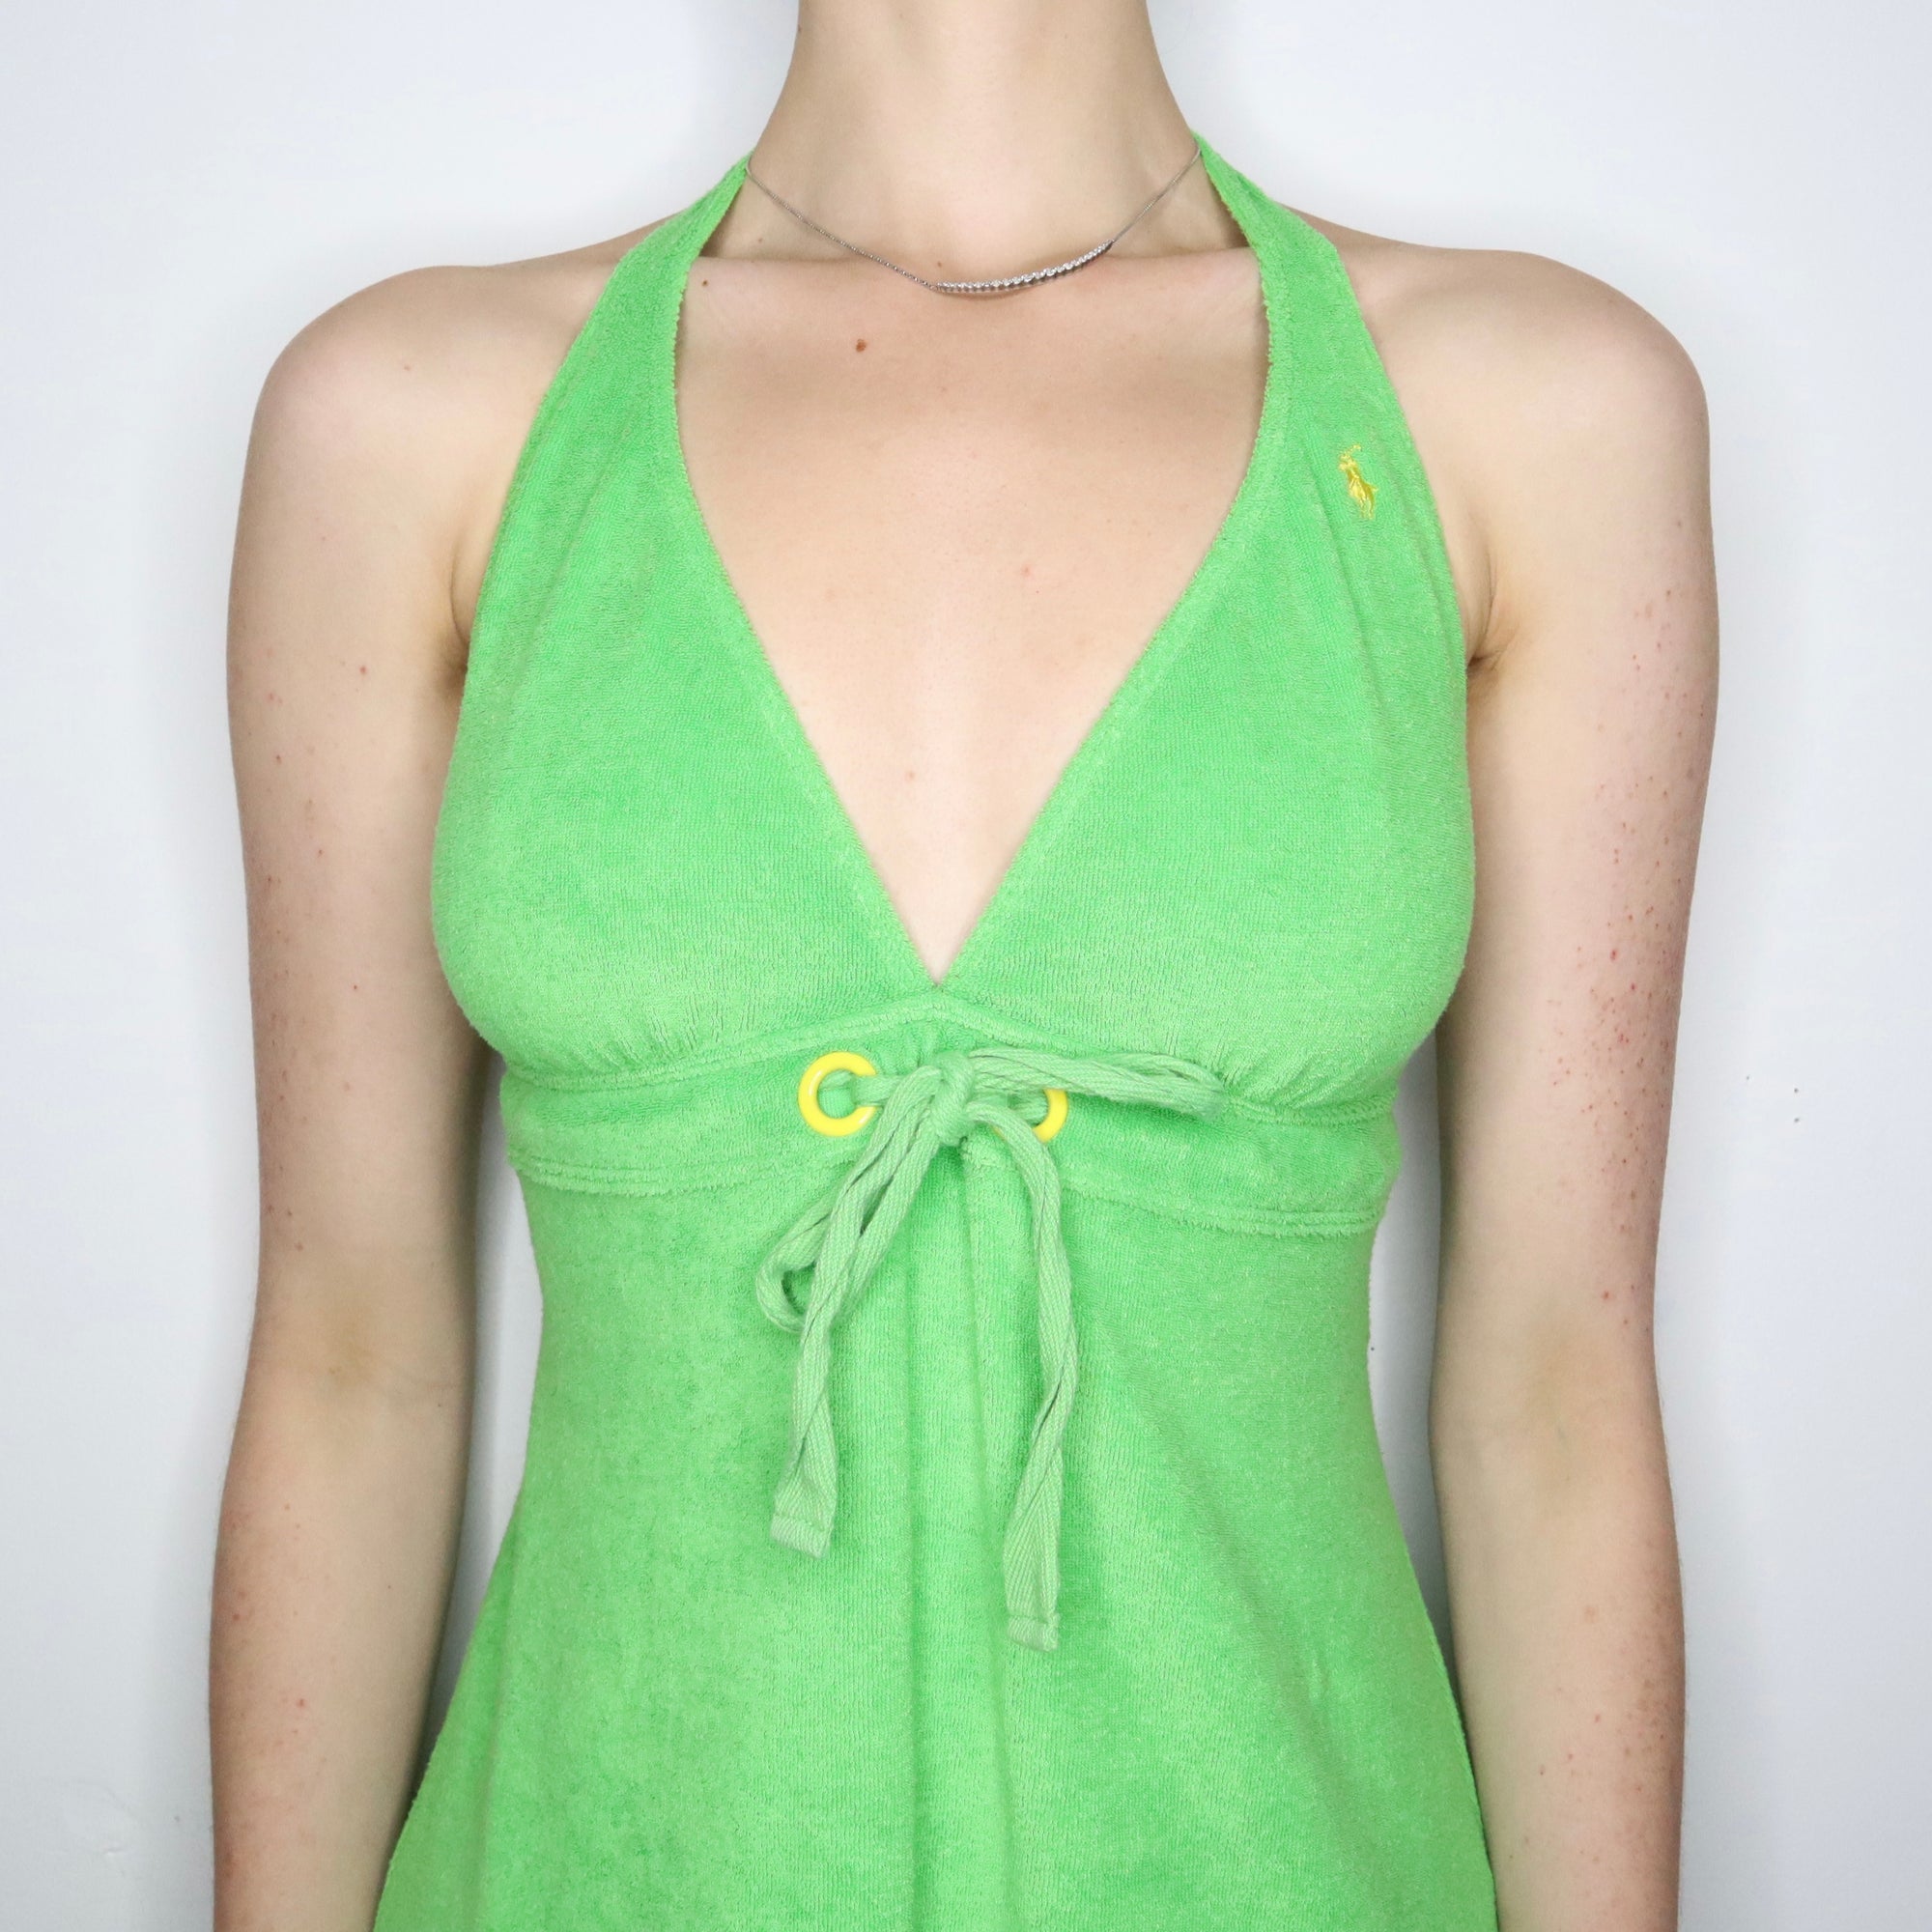 Lime Green Halter Dress 